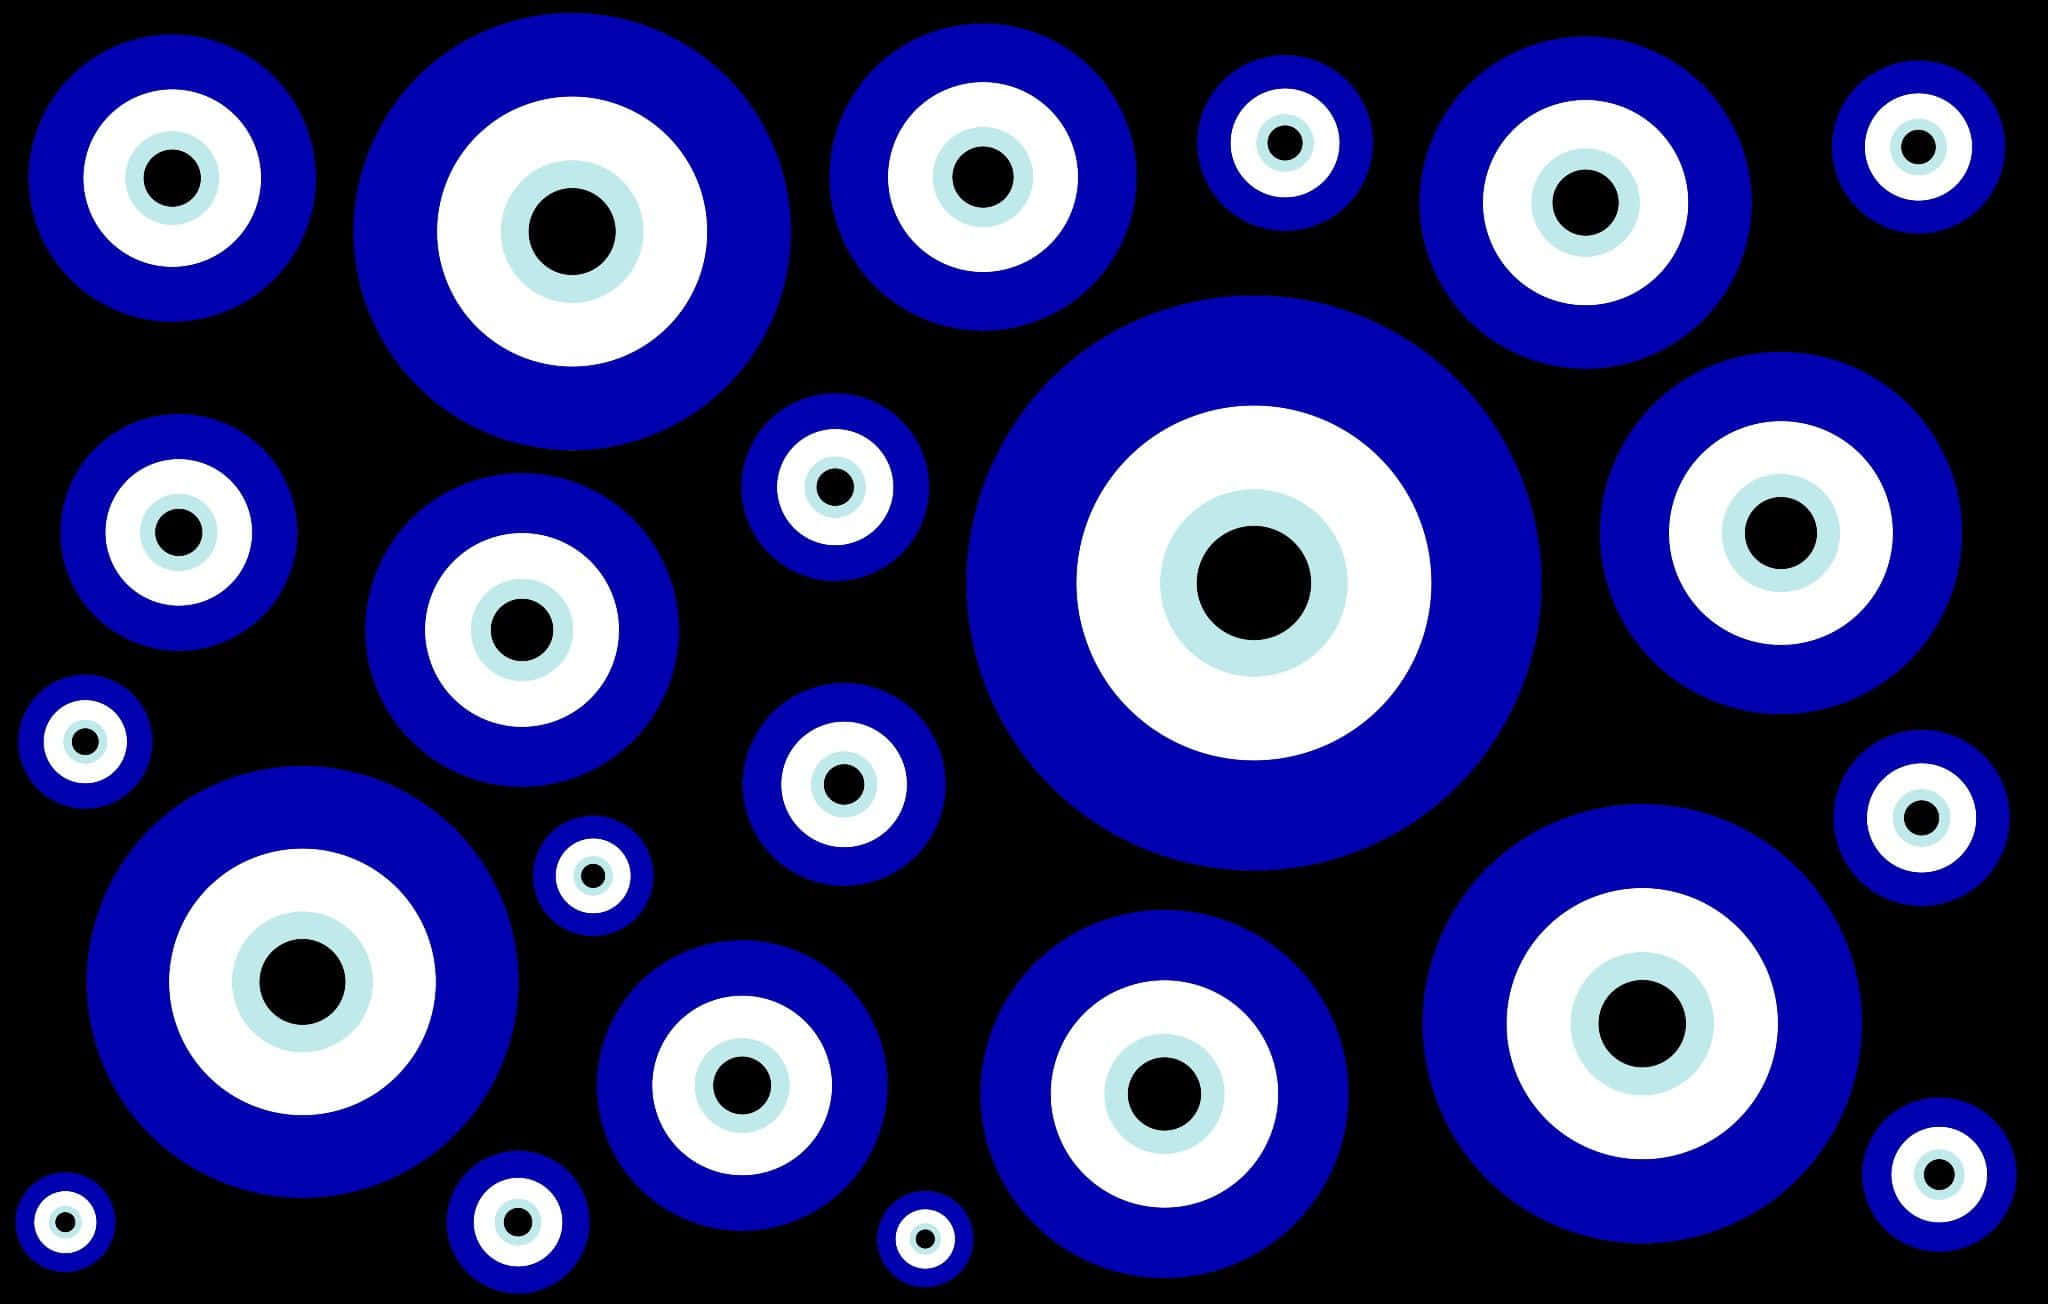 Einschwarzer Hintergrund Mit Blauen Und Weißen Bösen Augenkreisen.